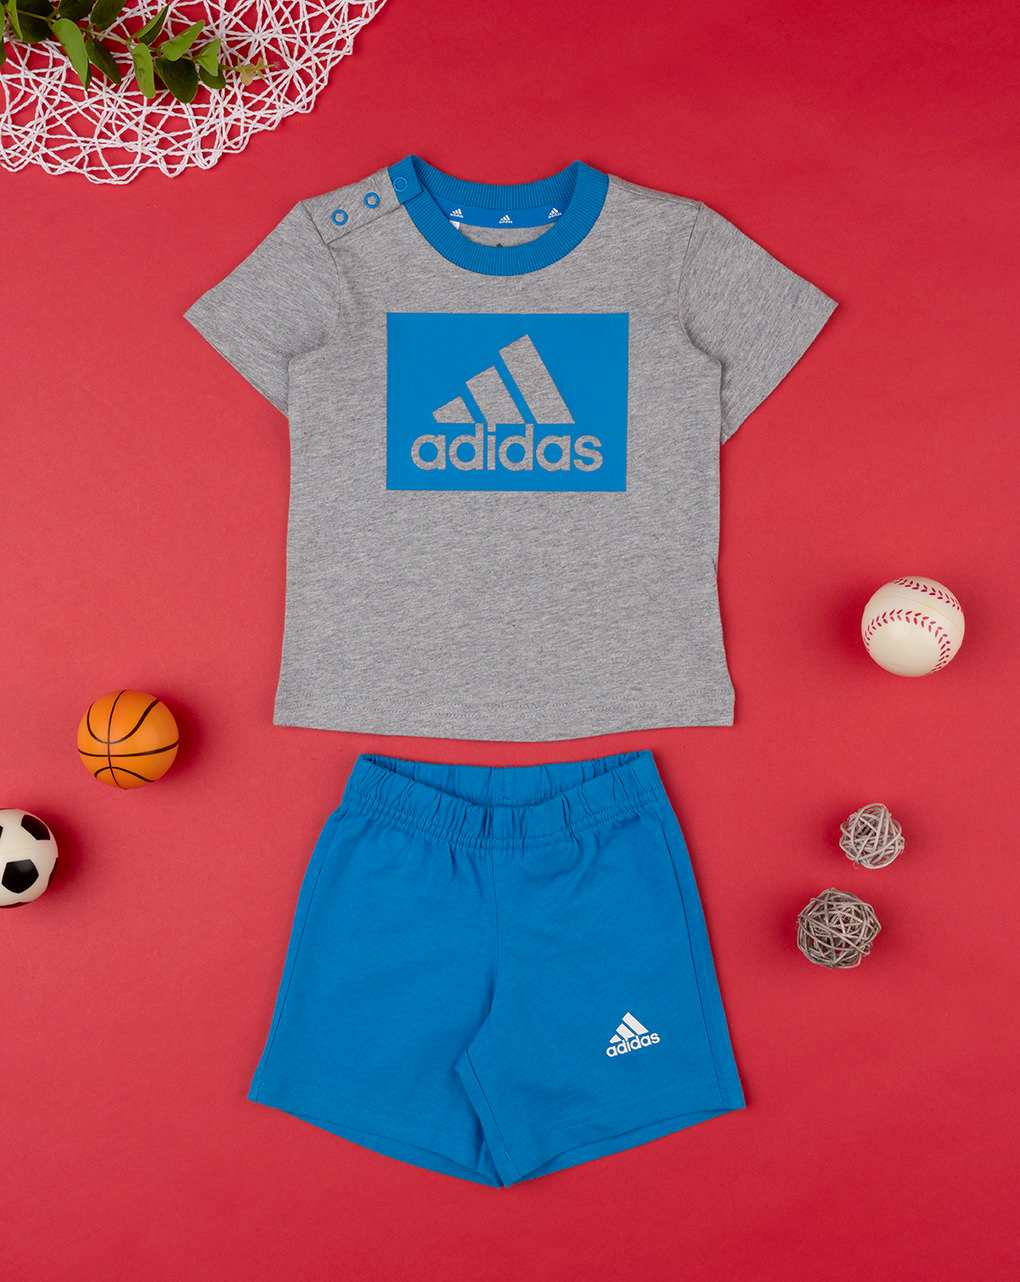 Adidas αθλητικό σετ t-shirt και σορτσάκι για αγόρι - Adidas